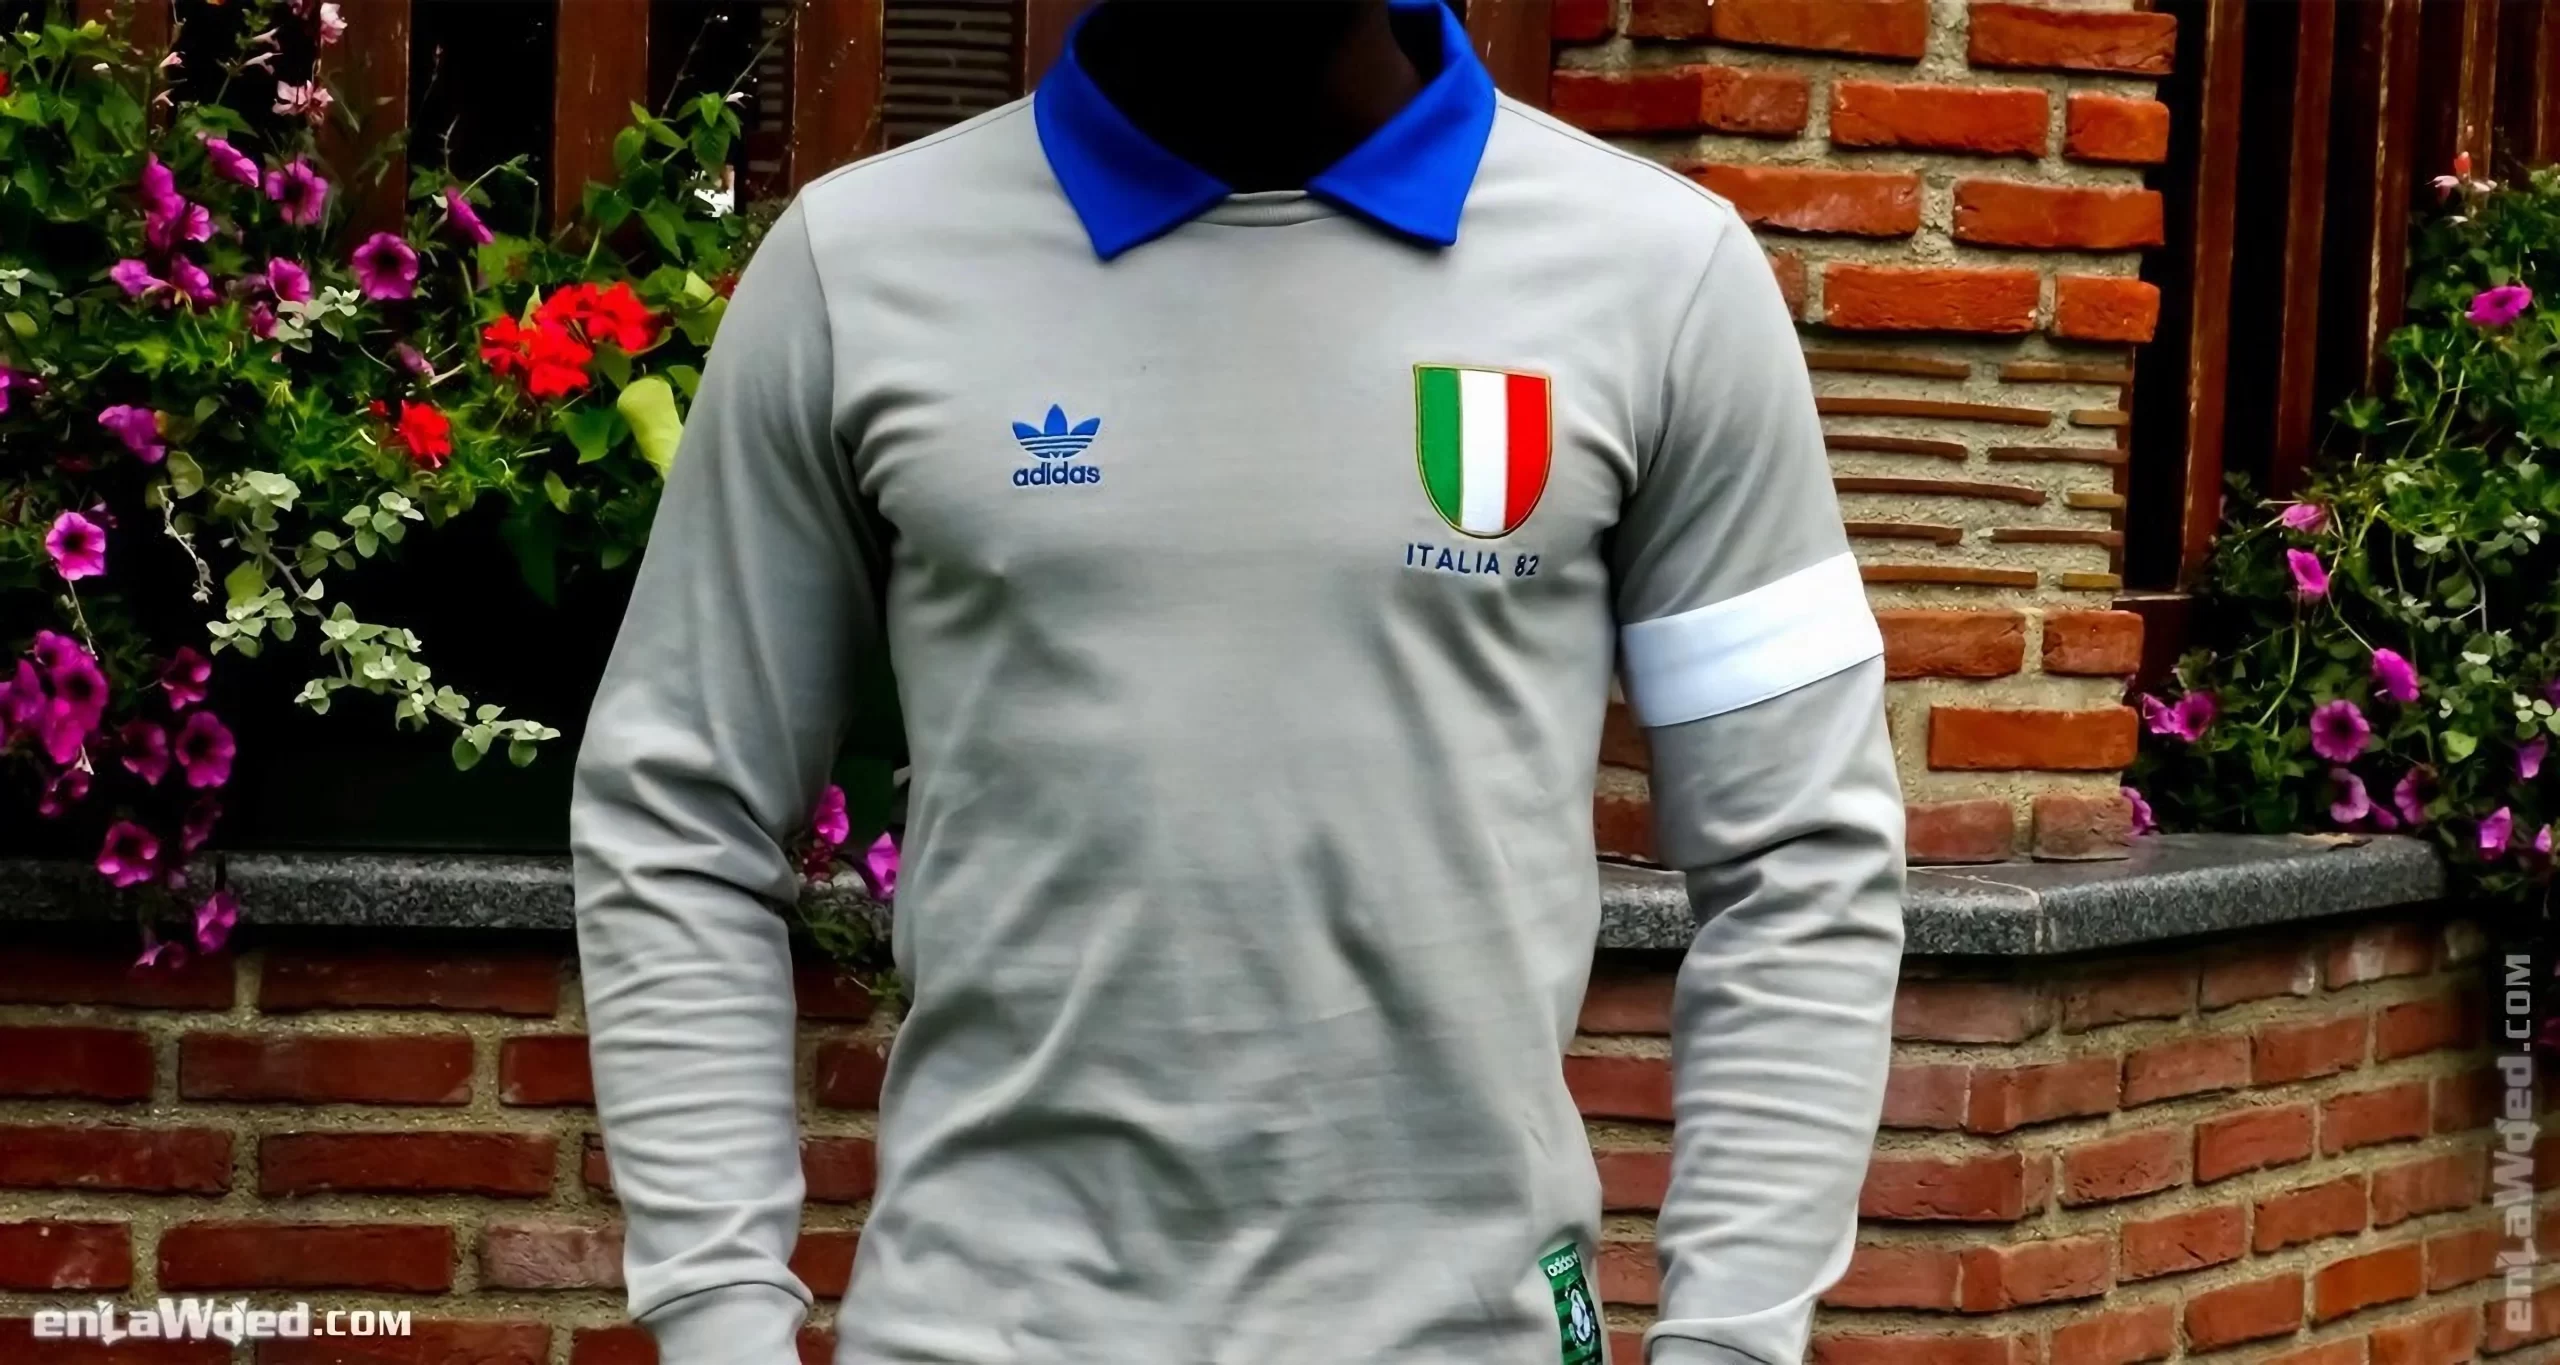 Men’s 2006 Italia ’82 Forza Azzurri LS by Adidas Originals: Joyous (EnLawded.com file #lmcf7rkdy61ni3pdy28)